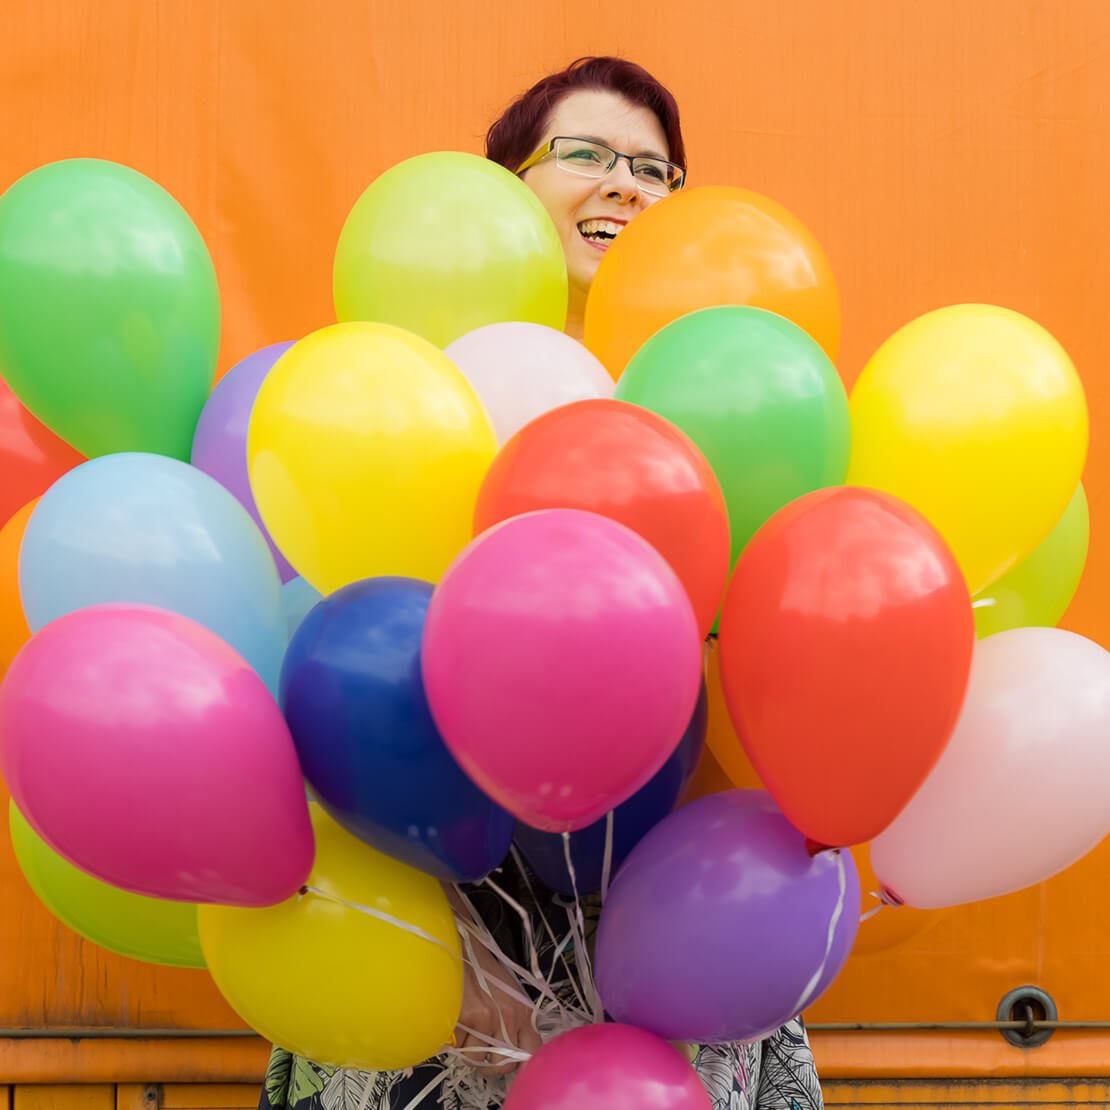 10 Jahre FarbFaible Marken- und Designagentur – Miriam feiert Ihre Agentur